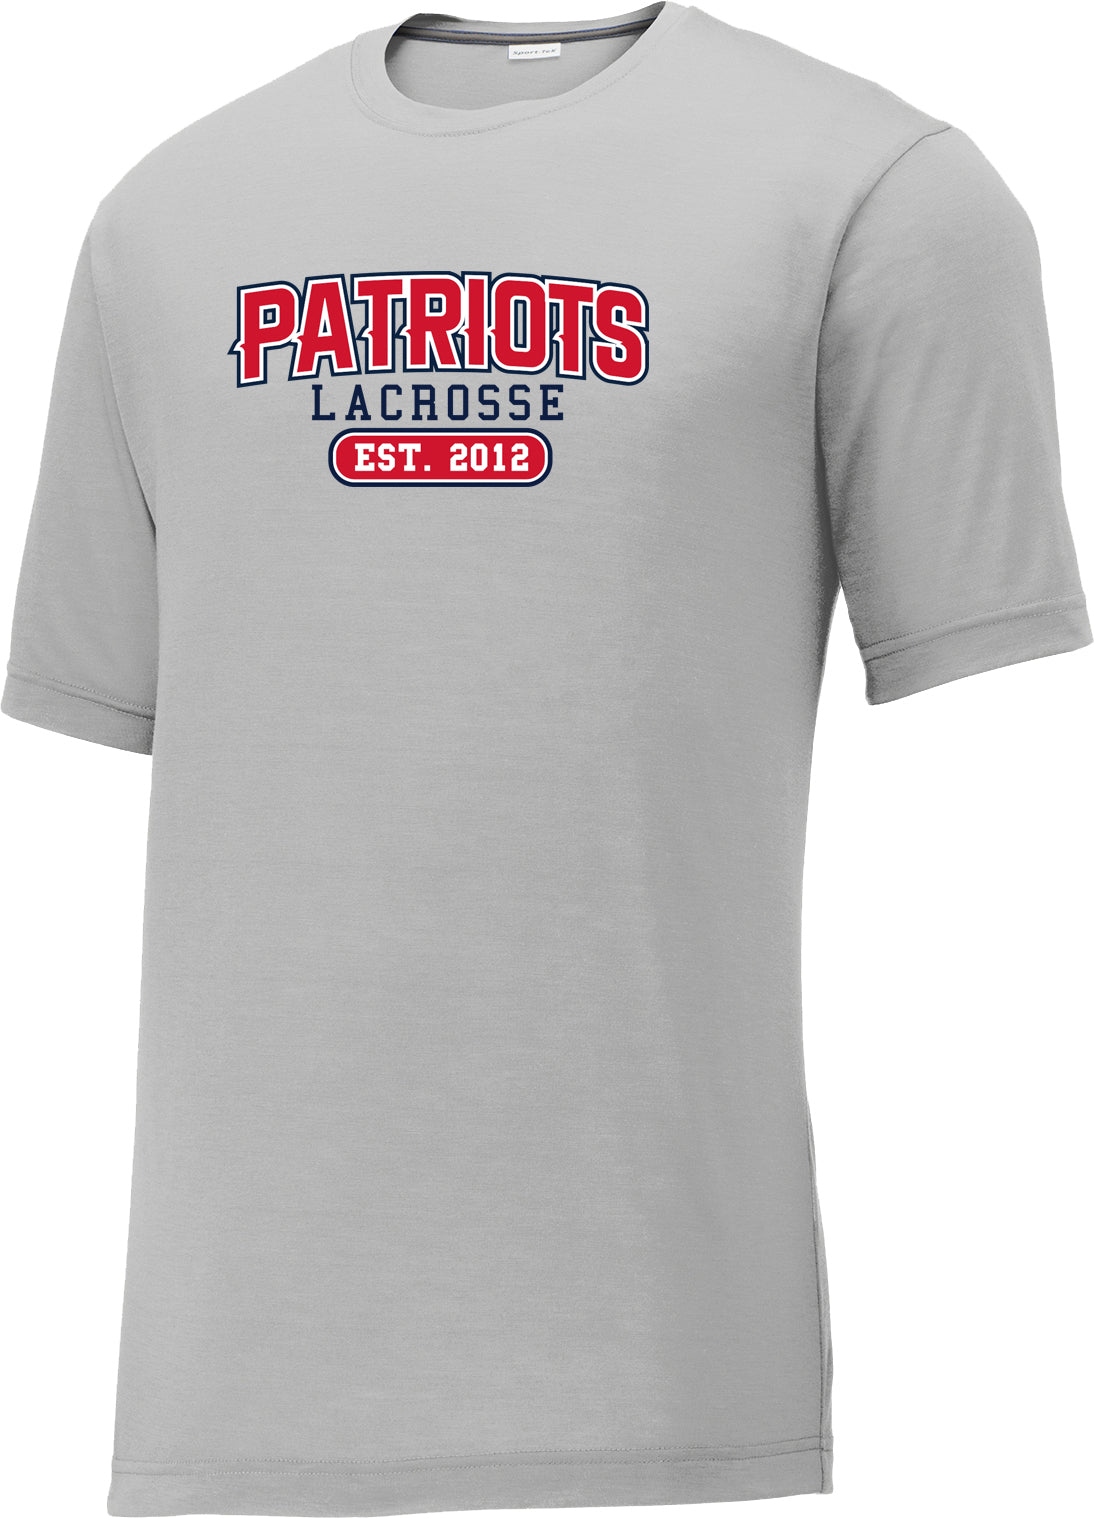 Augusta Patriots Men's Silver CottonTouch Performance T-Shirt